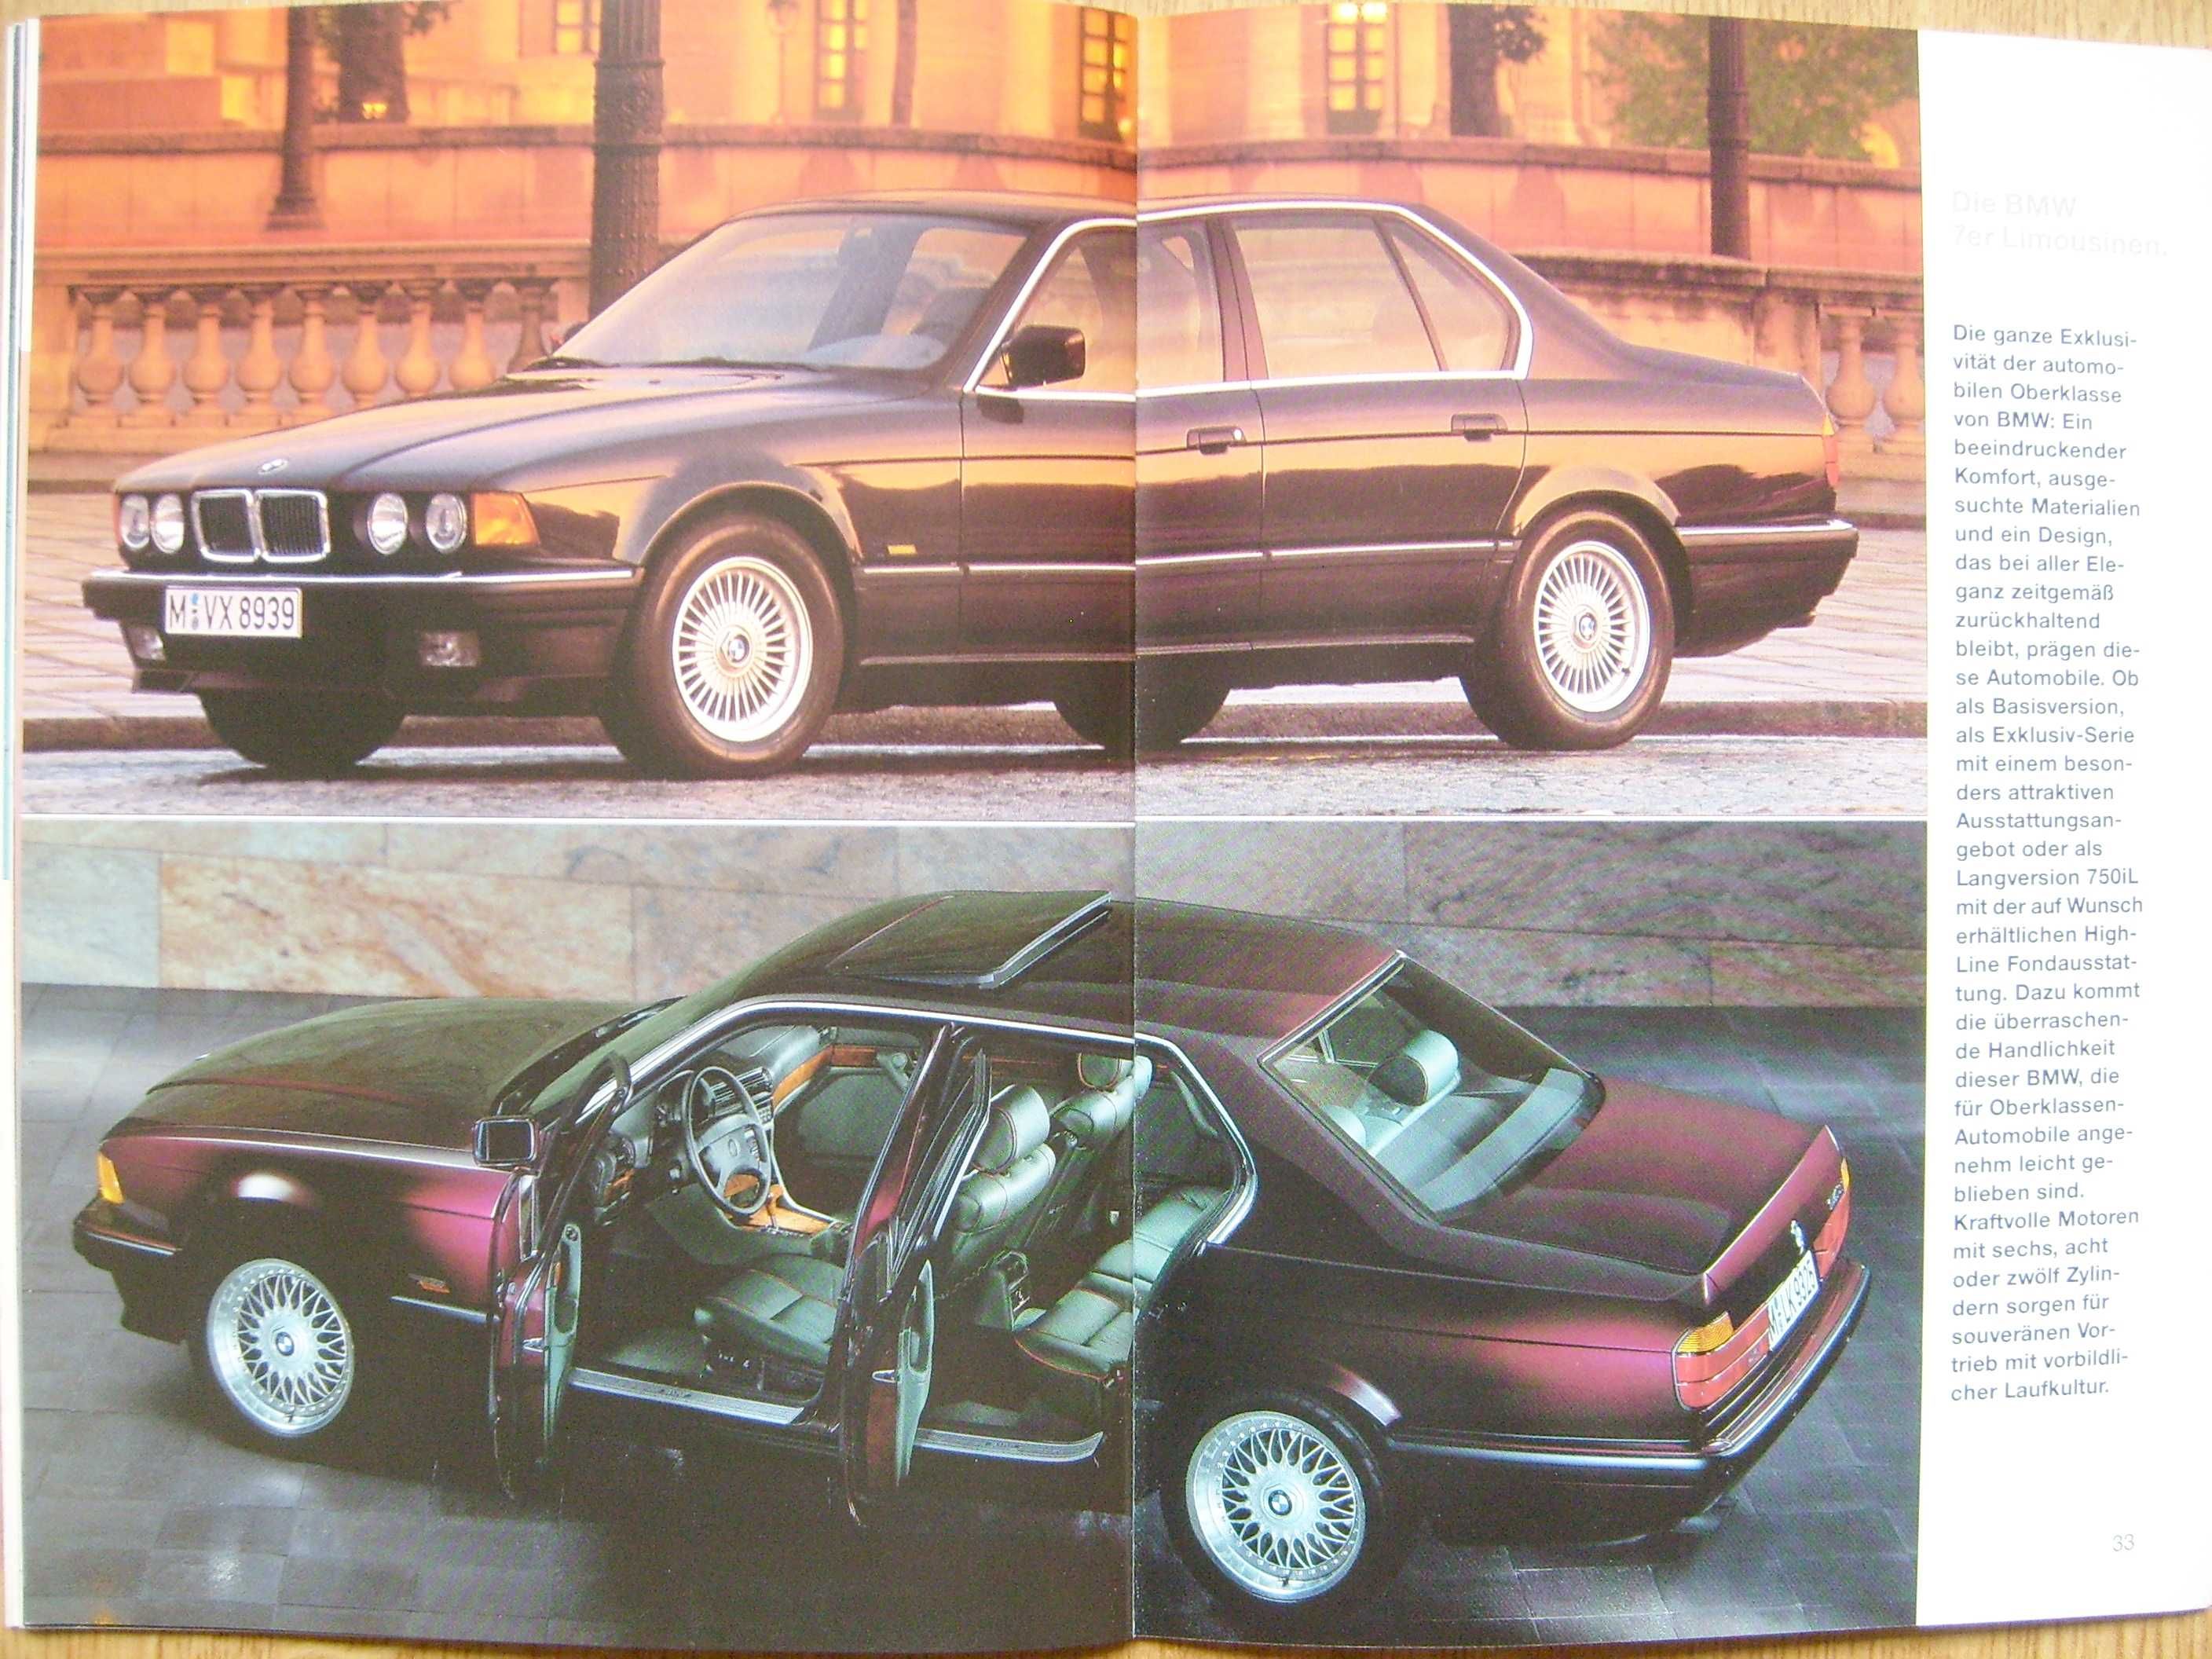 BMW 1994 / 3 E36, 5 E34, 7 E32, 8 E31  * katalog prospekt 46 str. BDB